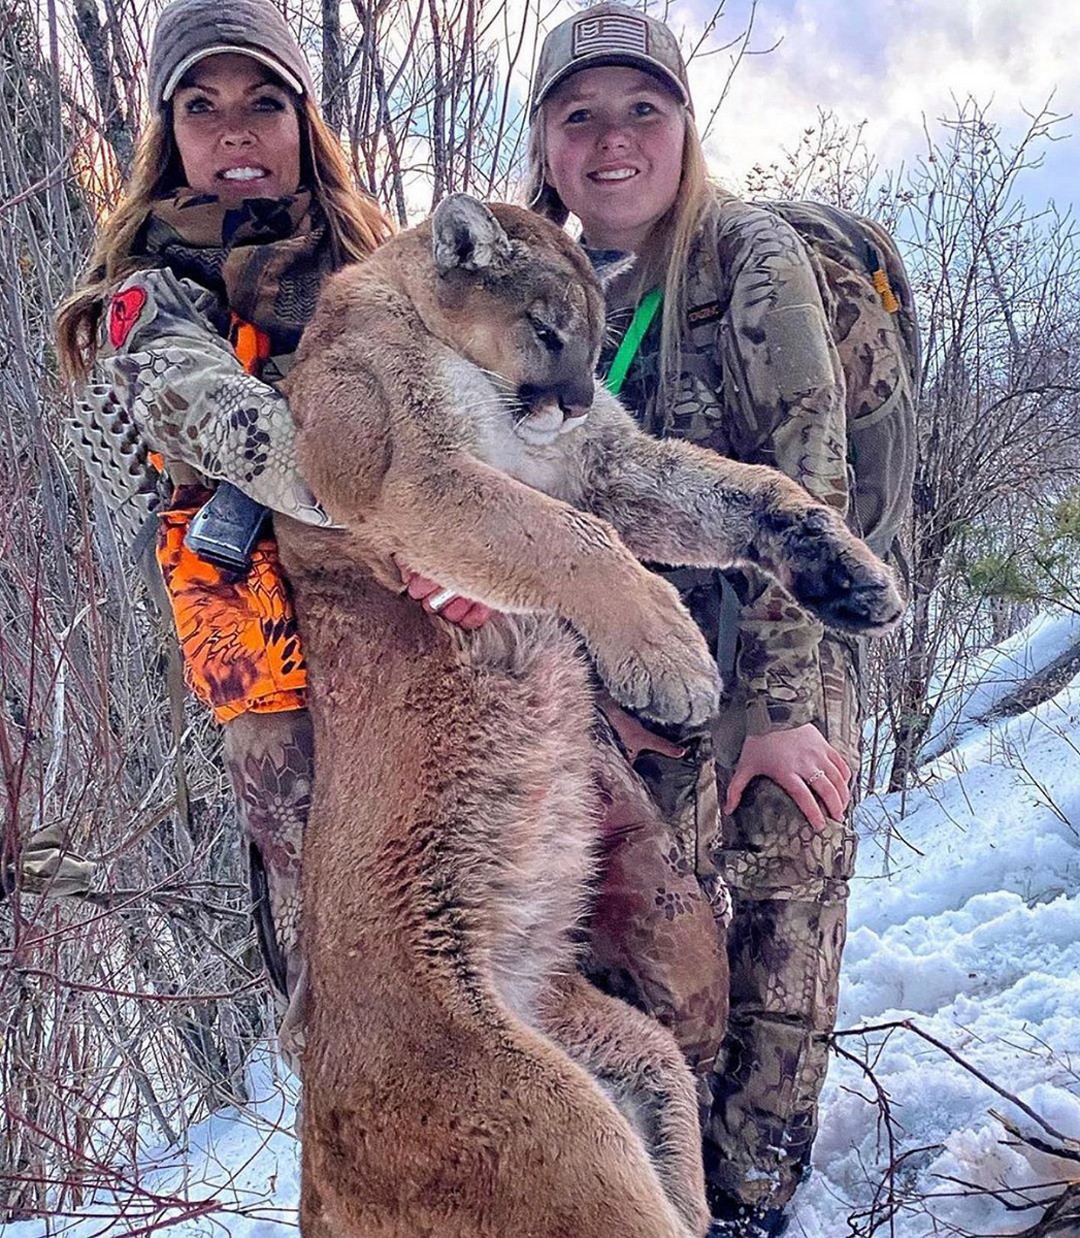 Красивые девушки на охоте: в Instagram появился аккаунт, который многие осудят. ФОТО